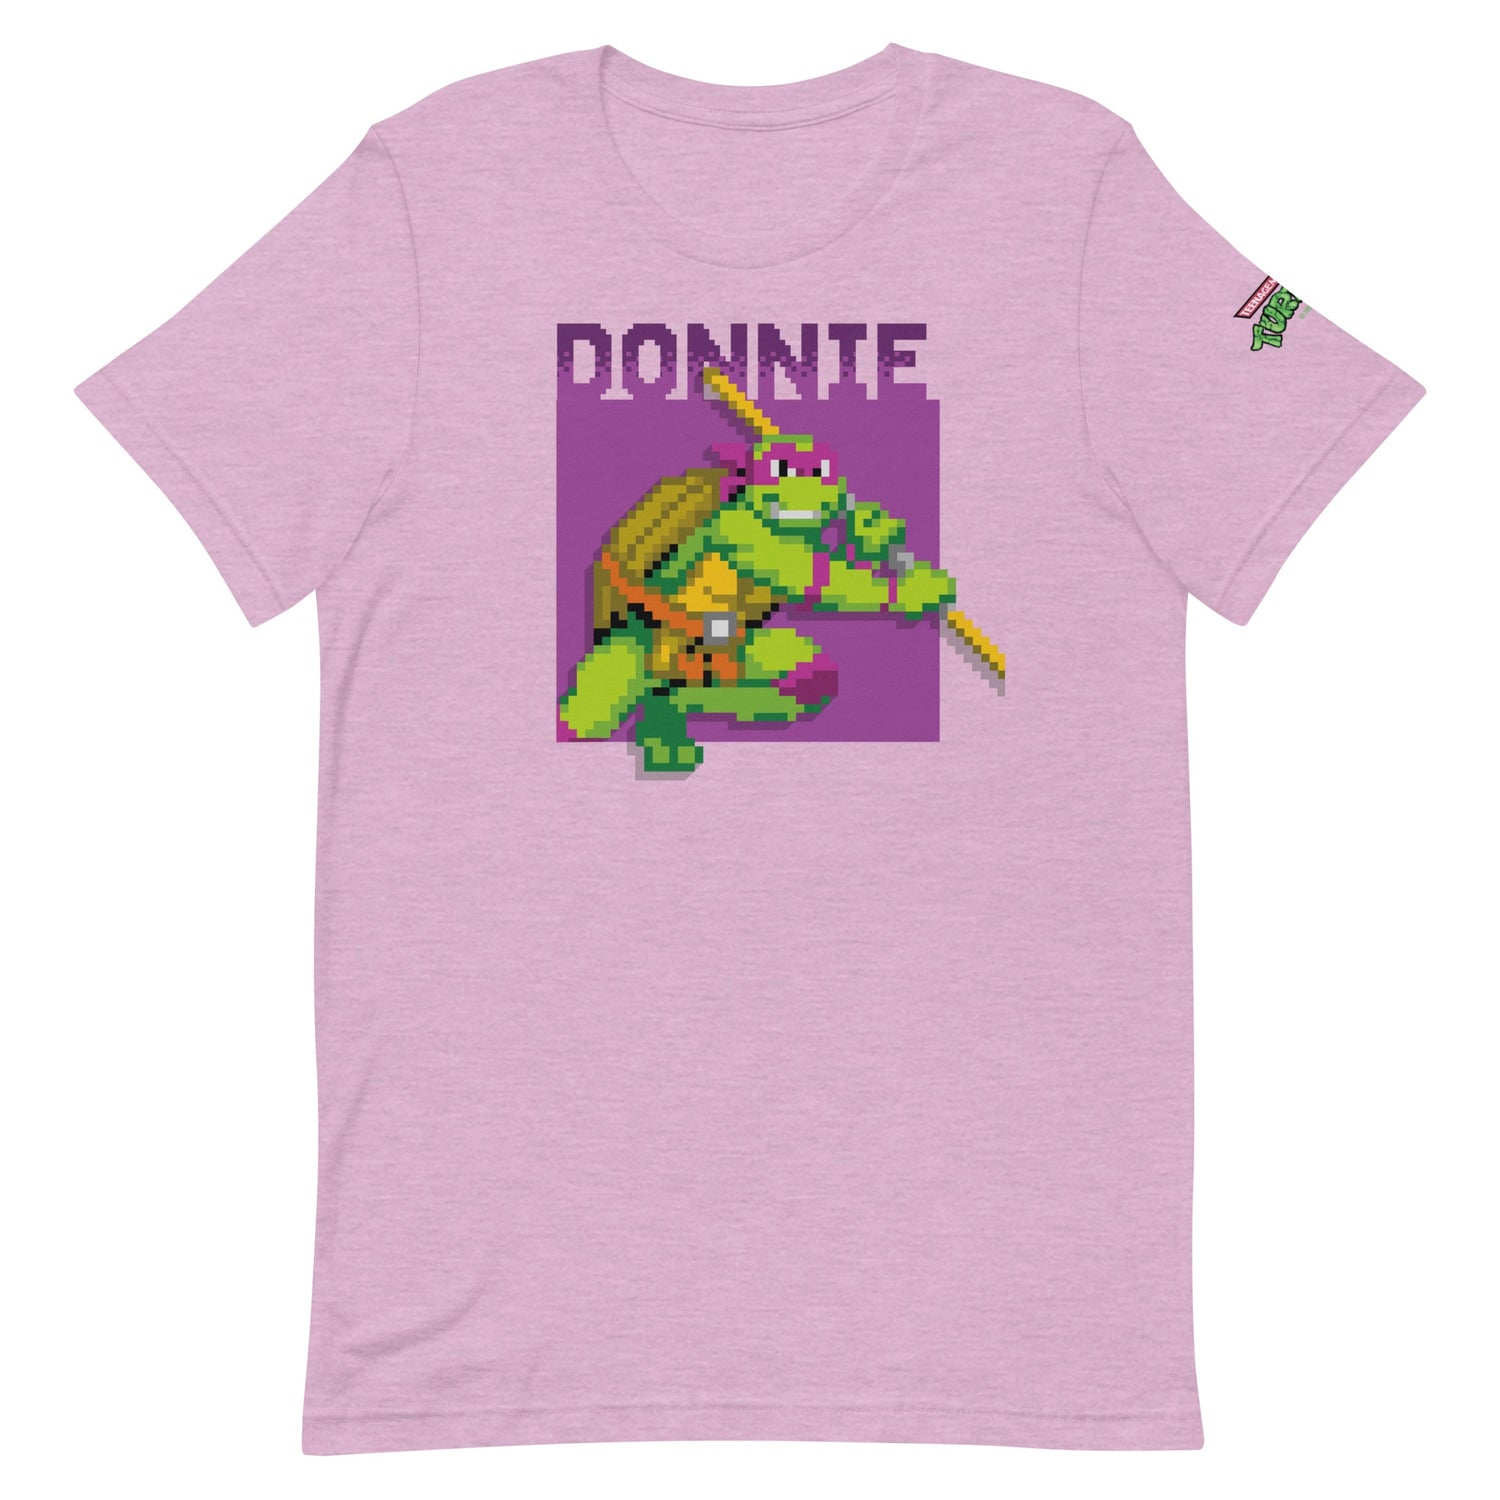 Teenage Mutant Ninja Turtles Donnie Arcade Ninja Adult Short Sleeve T-Shirt